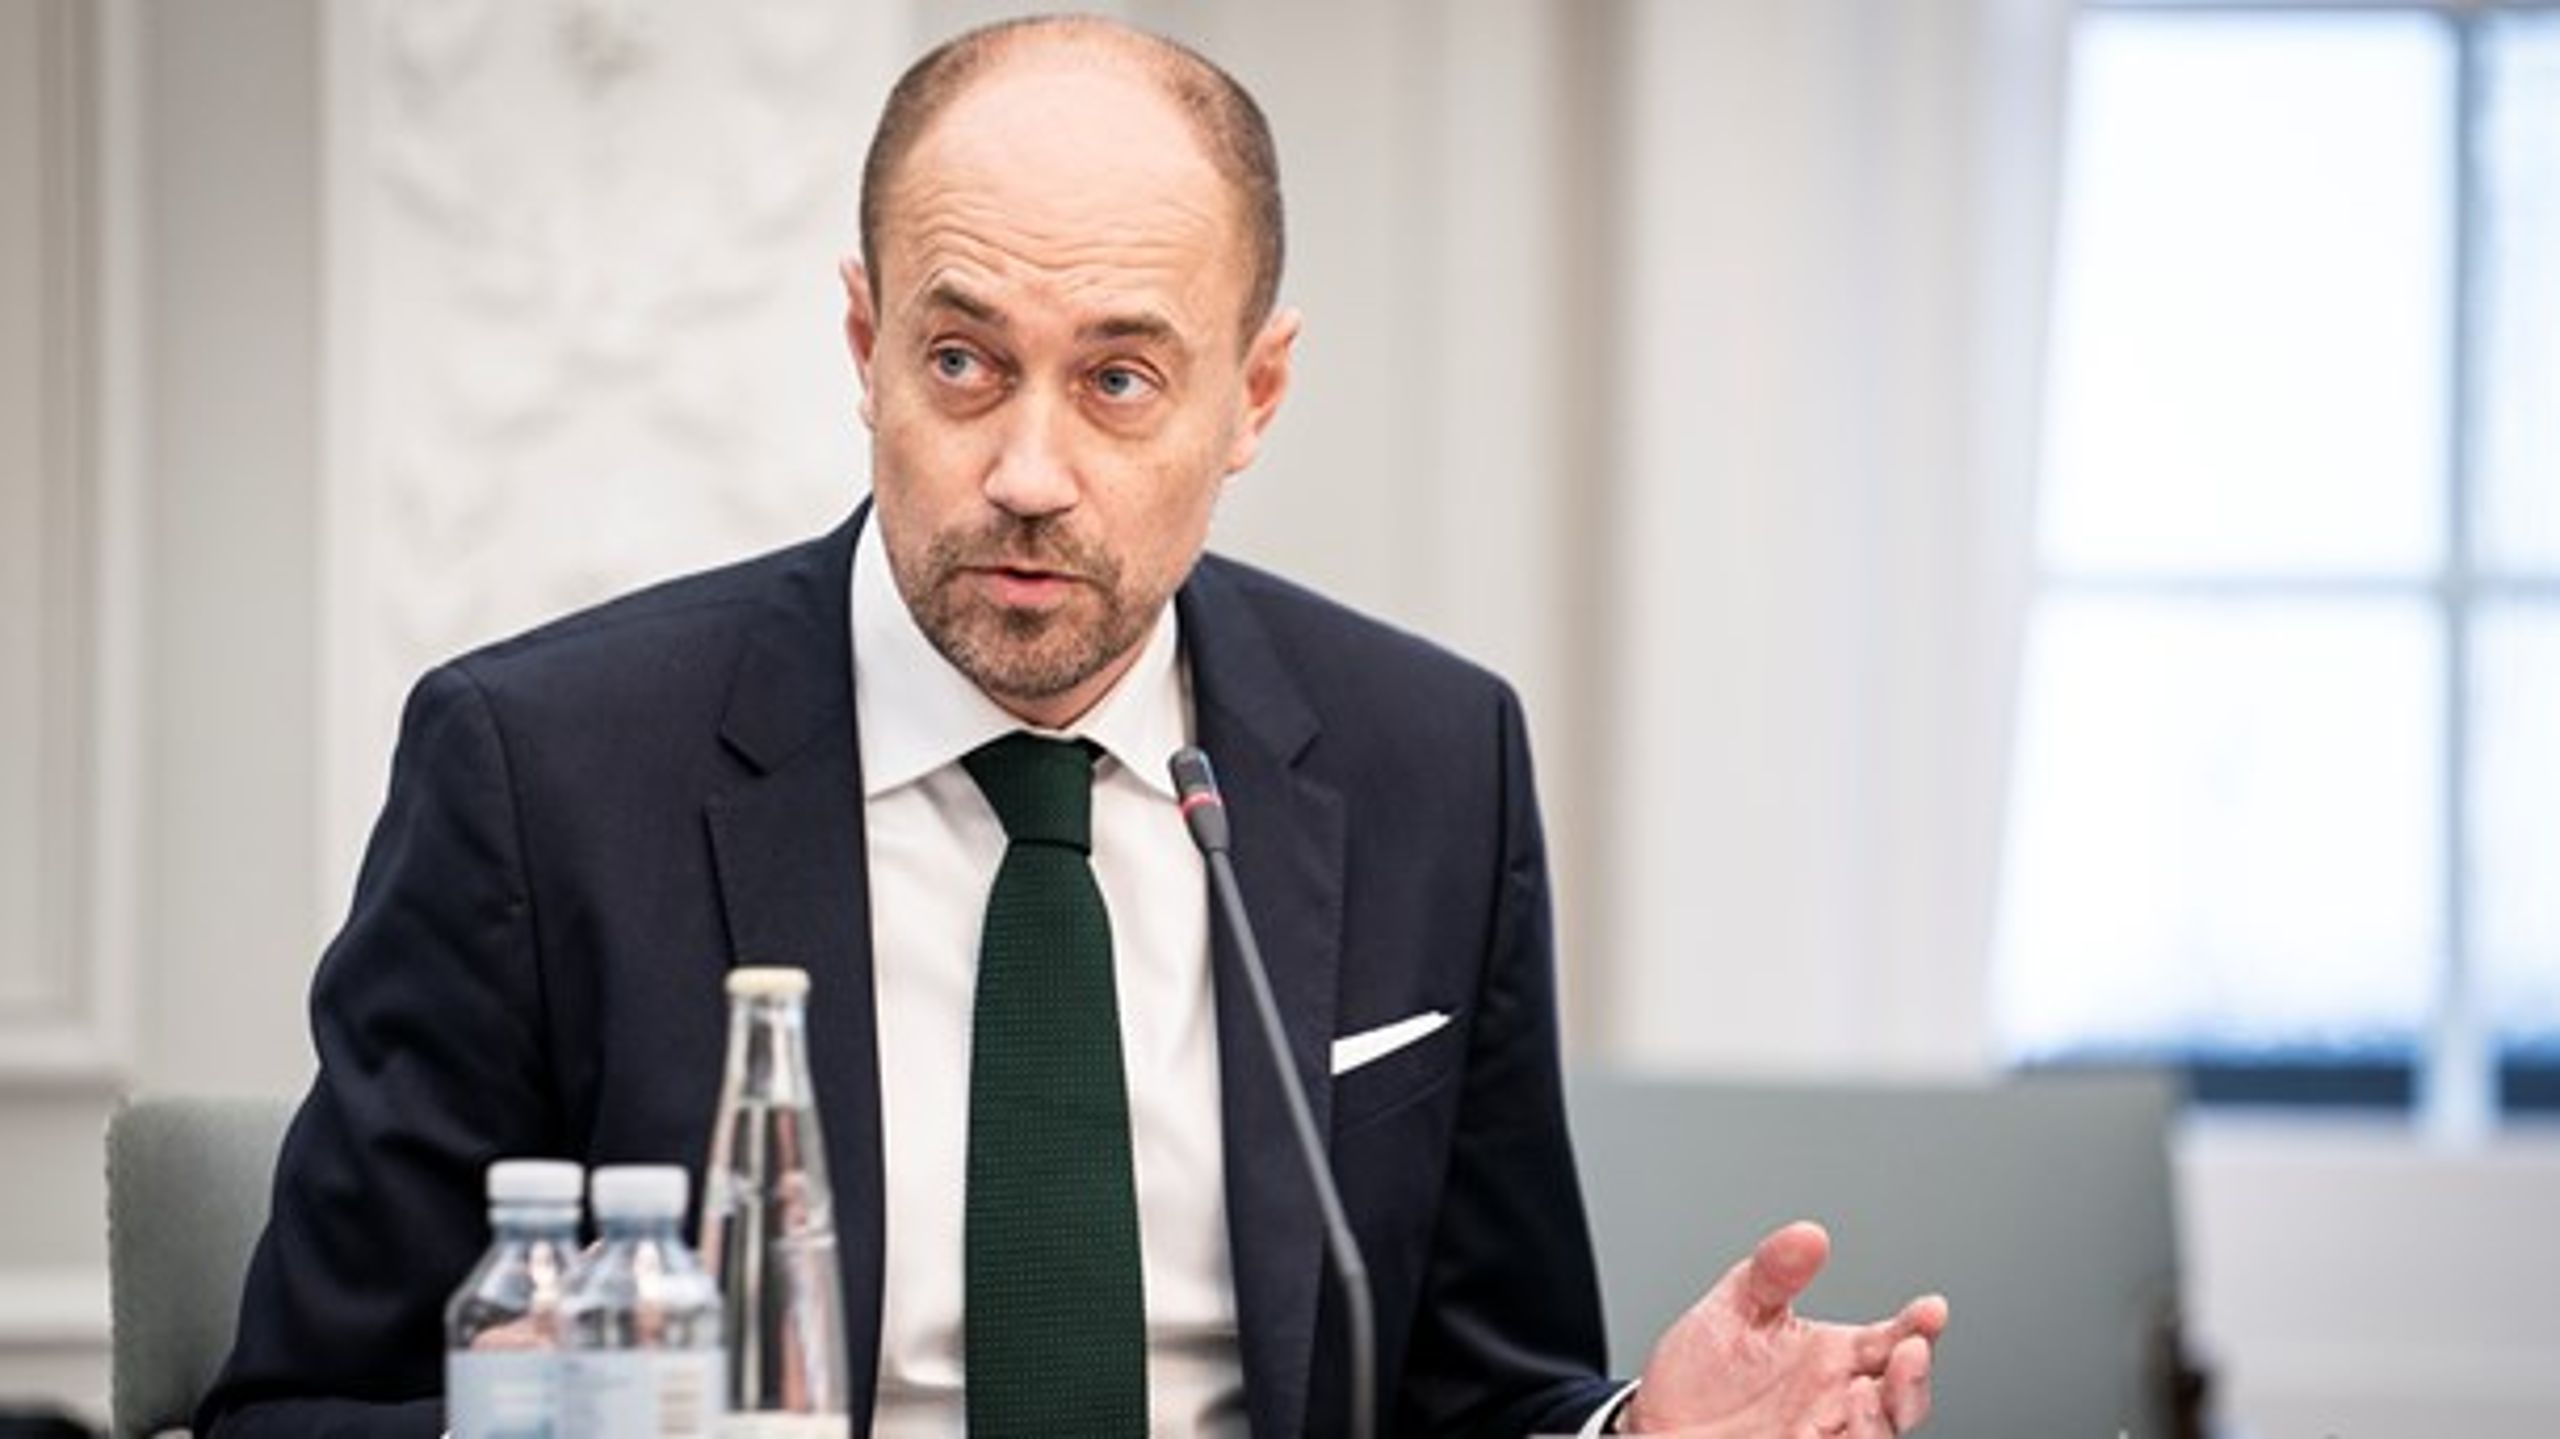 Sundhedsminister Magnus Heunicke (S) vil lave et menukort over mulige initiativer fremfor en konkret og seriøs strategi, der sigter på at udrydde hepatitis C, mener Brugernes Akademi.